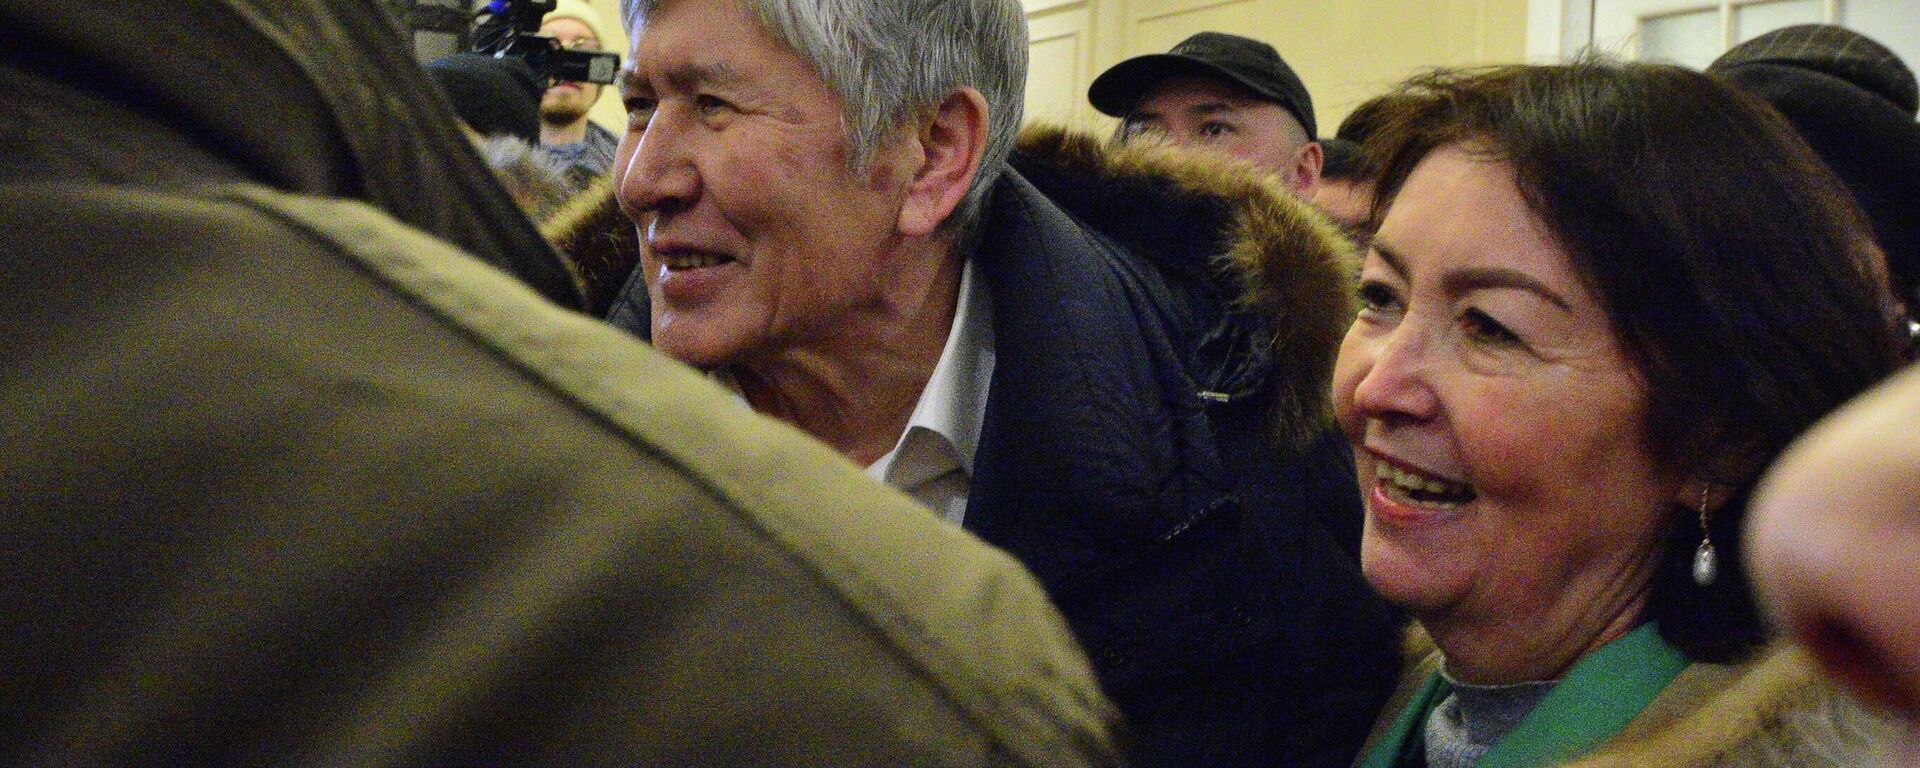 Супруга бывшего президента Кыргызстана Алмазбека Атамбаева Раиса Атамбаева встречает его после освобождения из заключения в селе Кой-Тай. 14 февраля 2023 года - Sputnik Кыргызстан, 1920, 14.02.2023